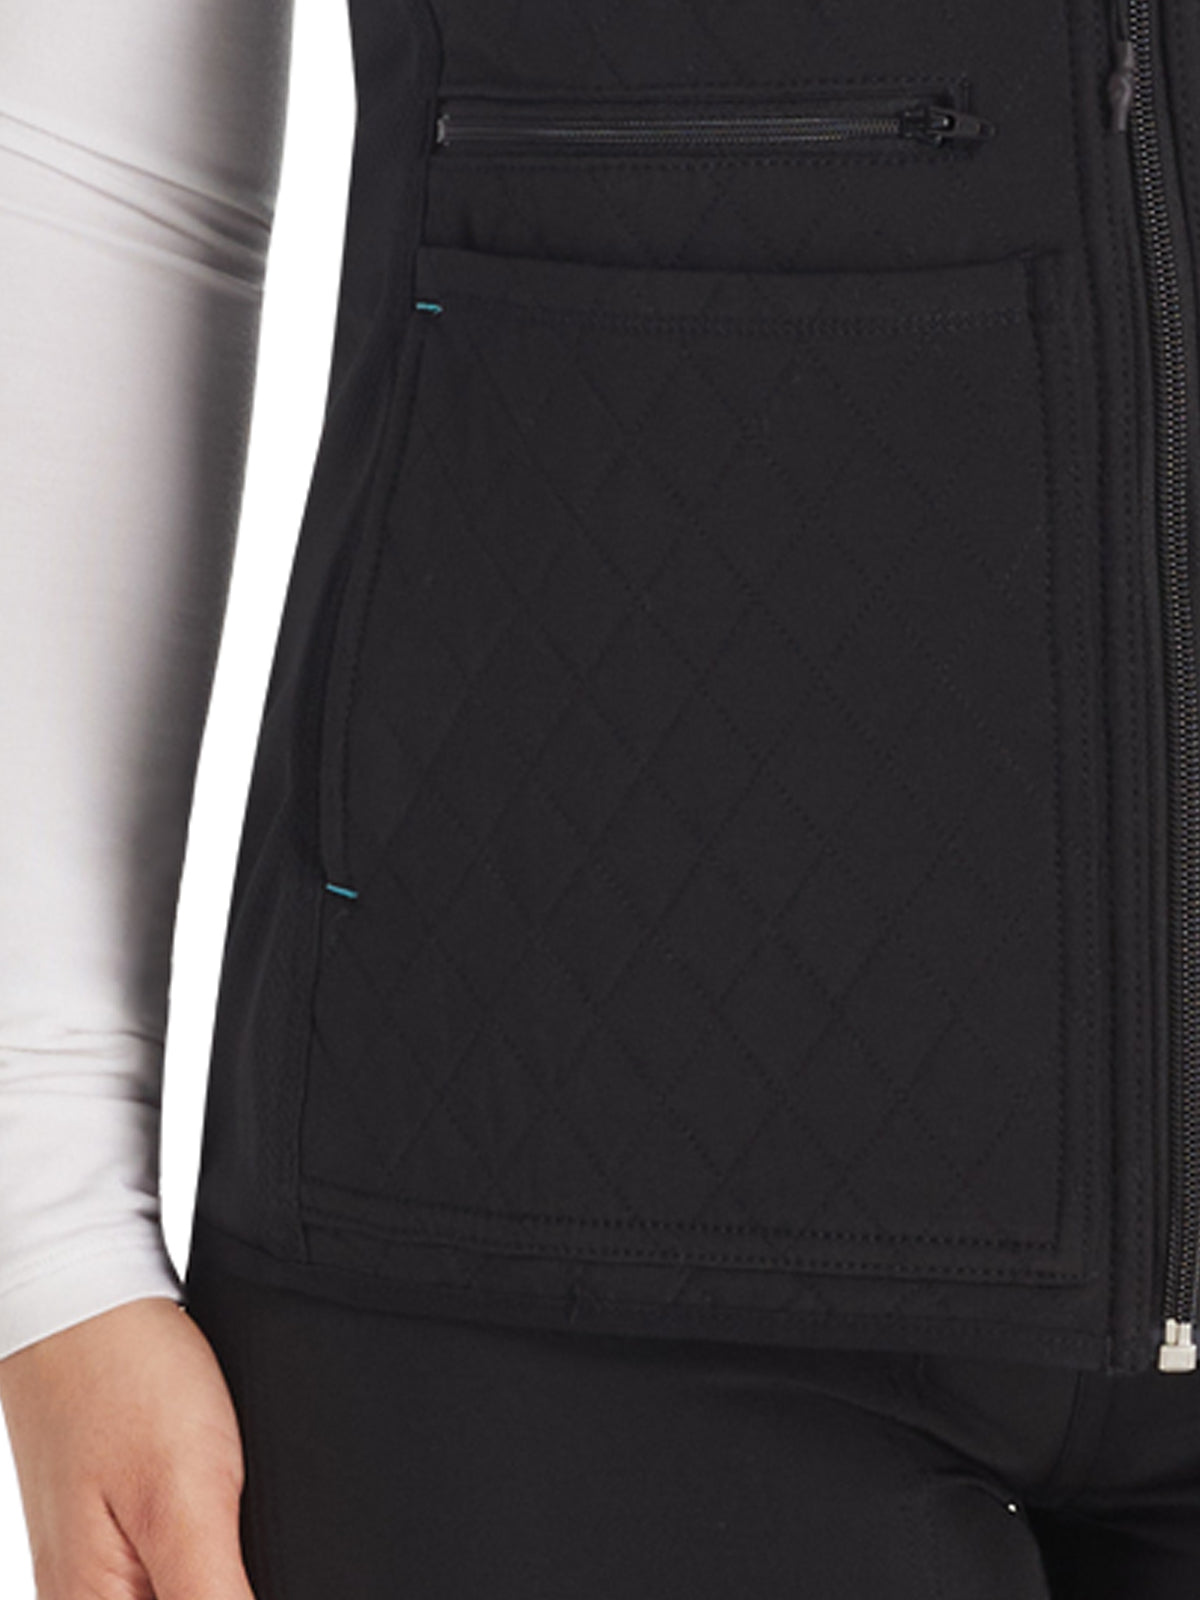 Women's 3-Pocket Zip Front Vest